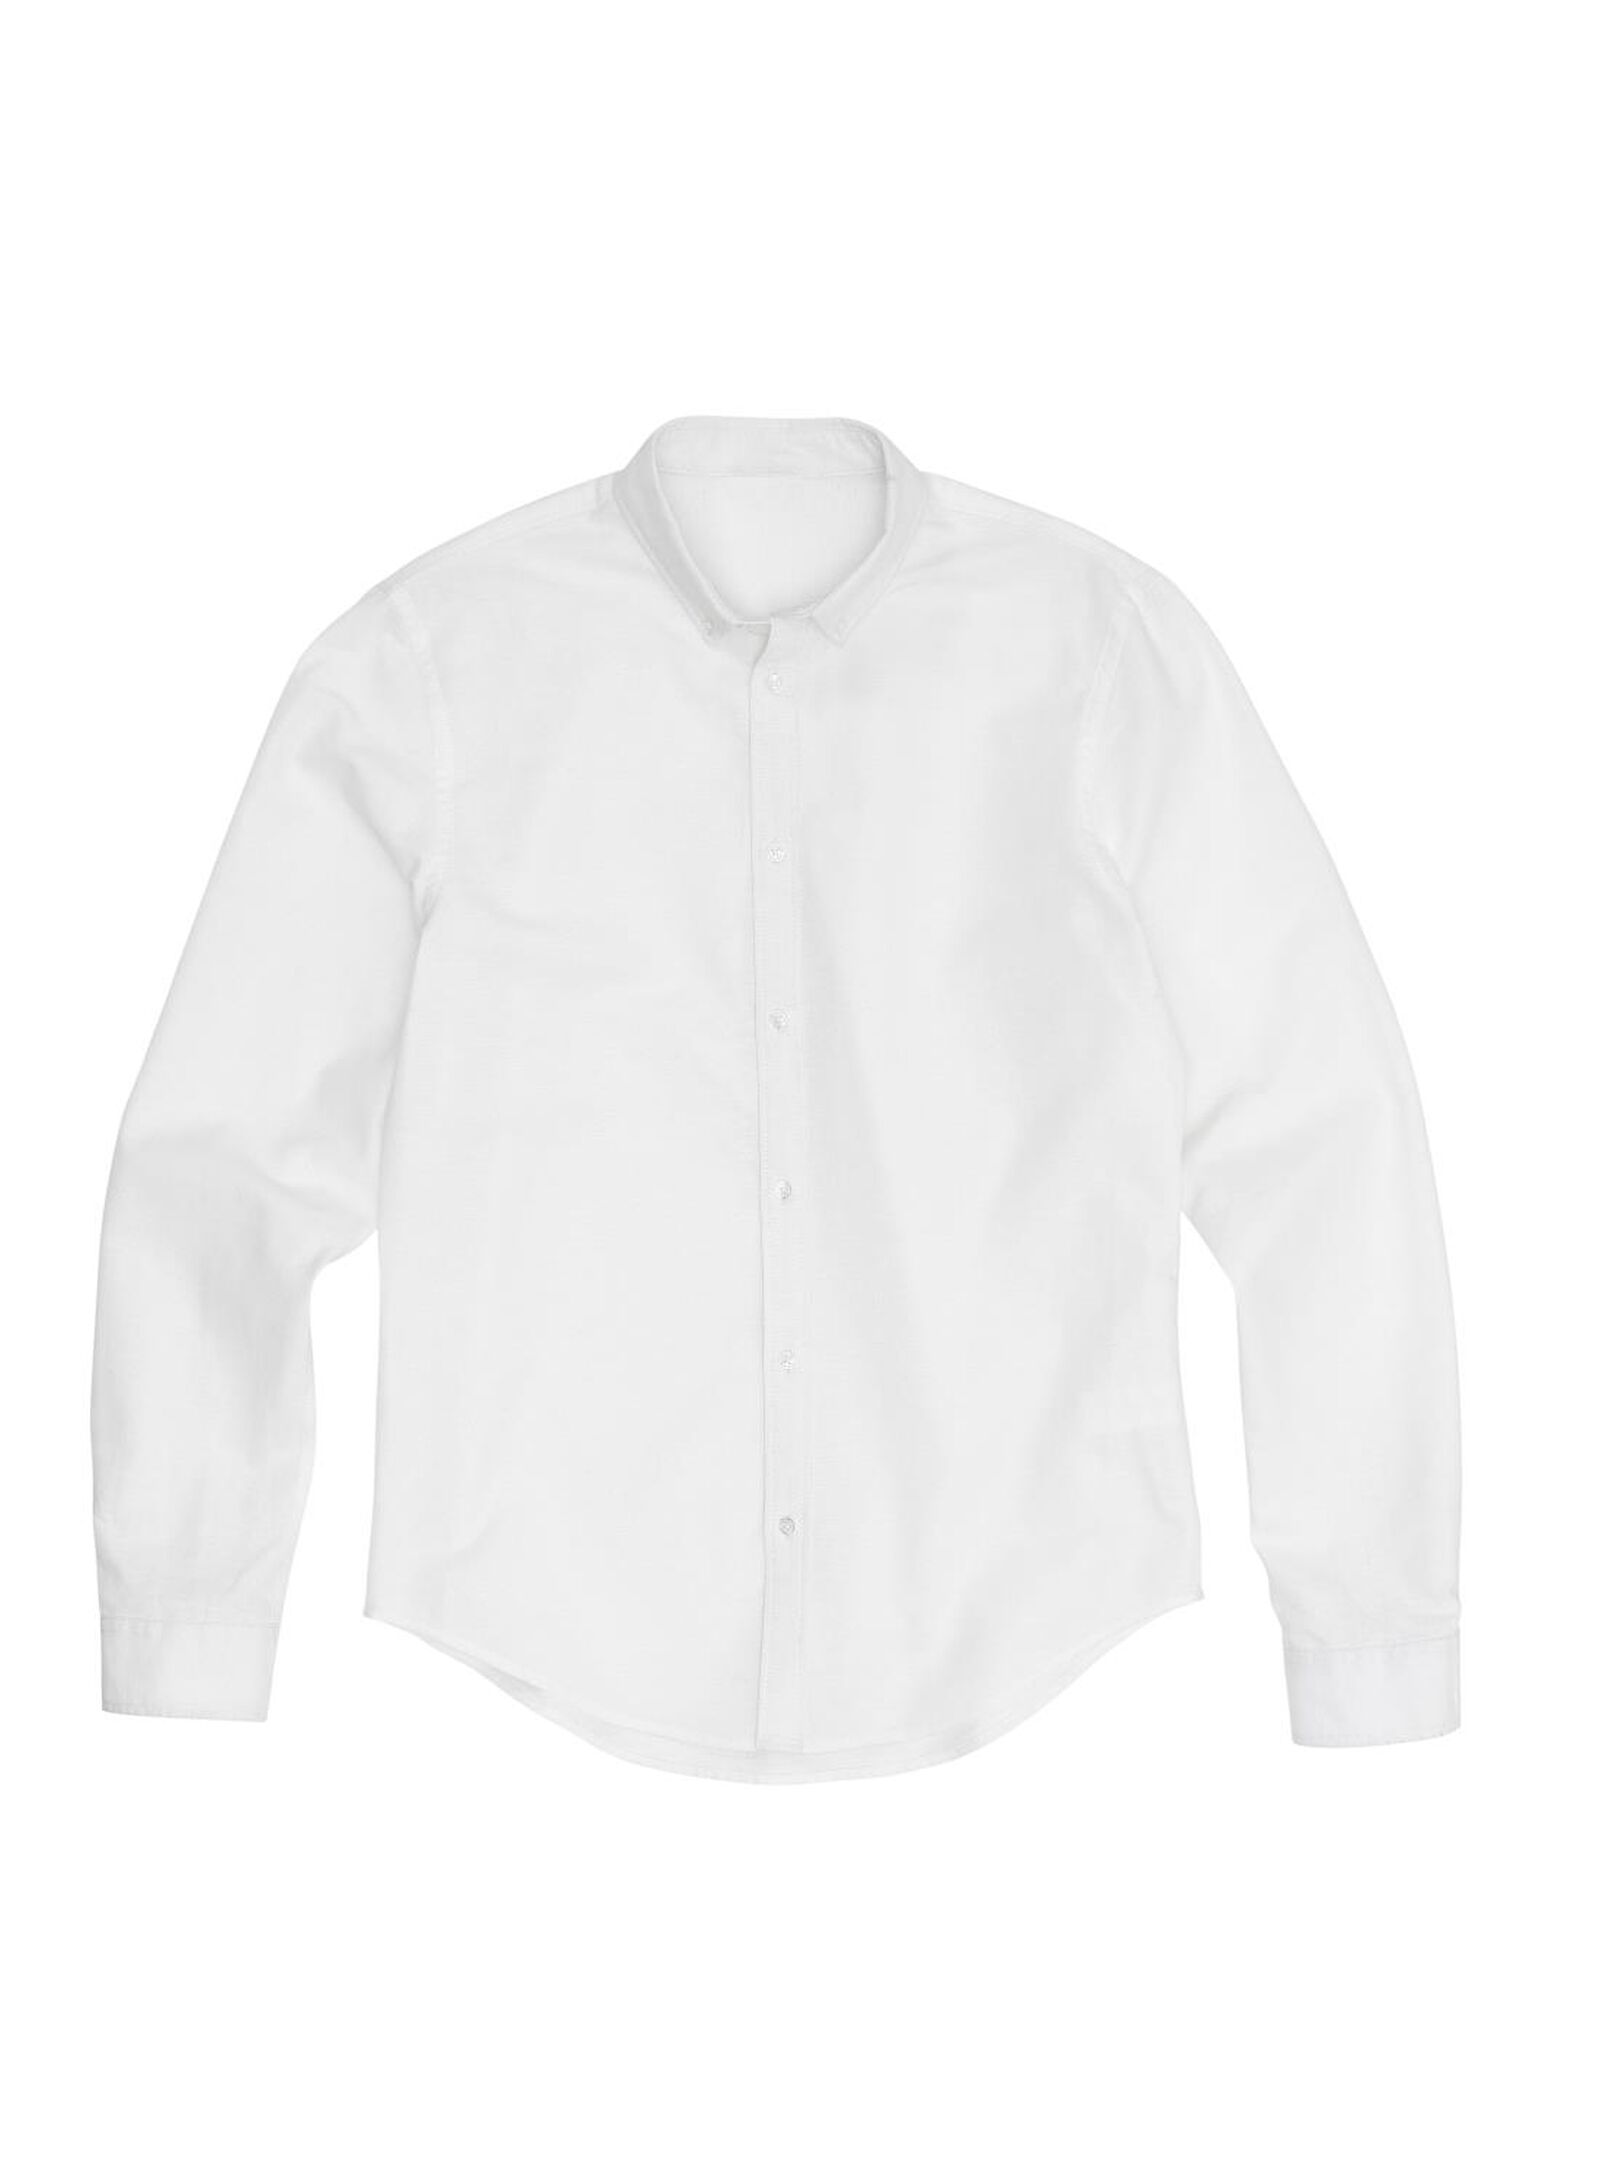 chemise homme blanc blanc - 1000012239 - HEMA